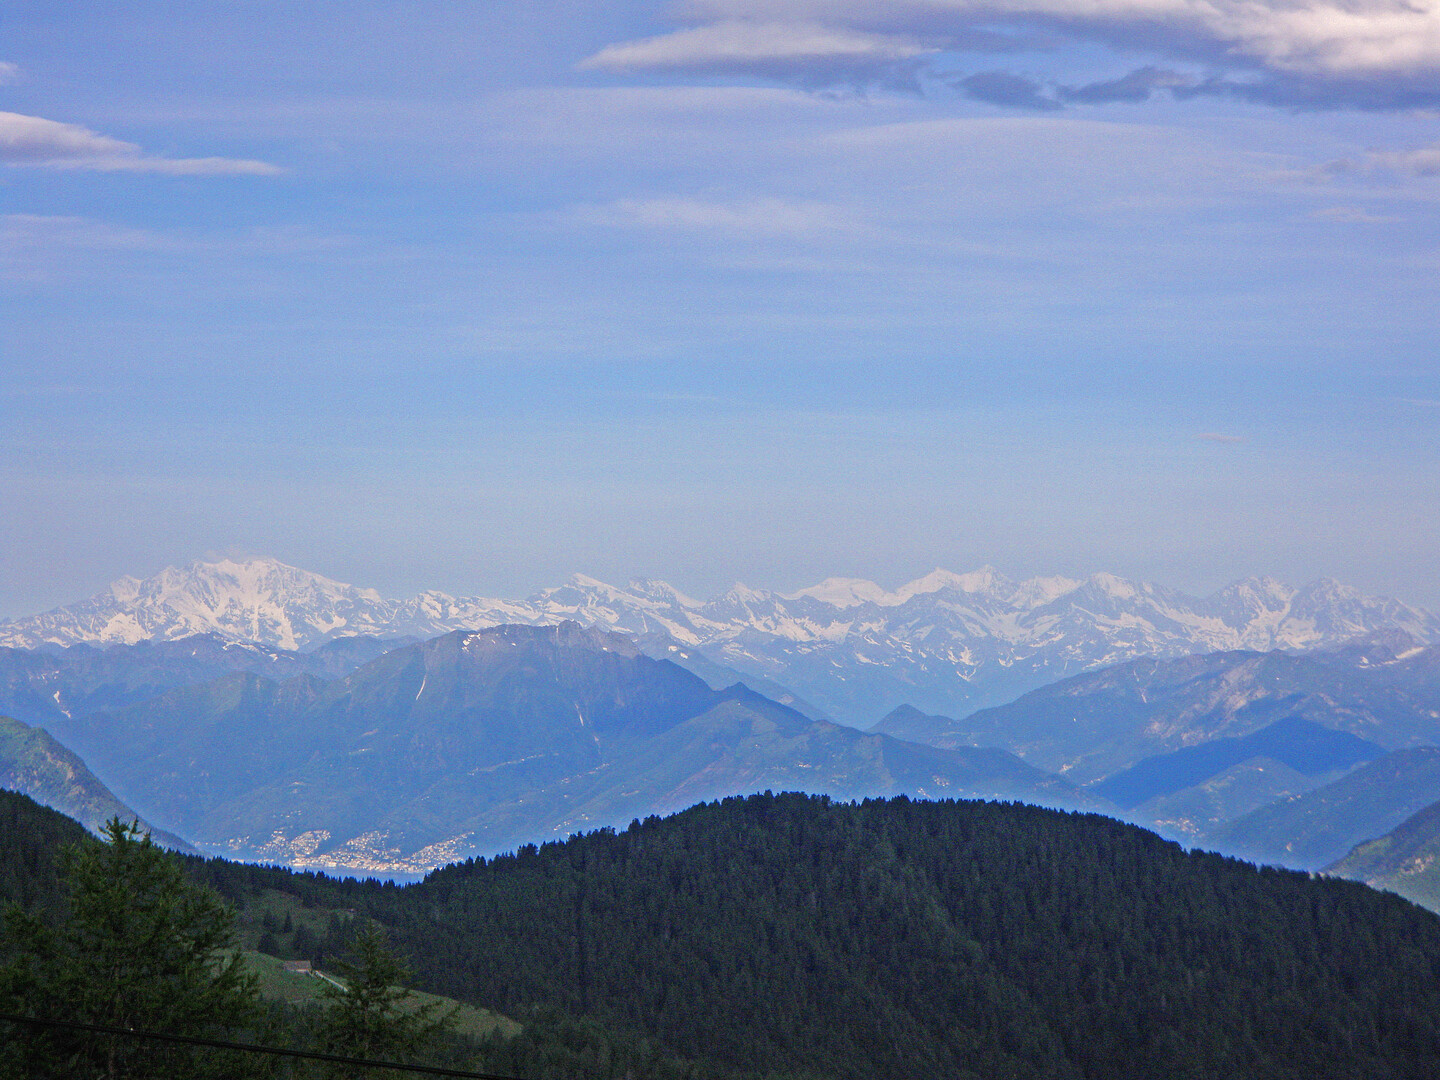 Monte Rosa, davor Gridone, Lago Maggiore und Brissago,
Alpe del Gesero doppio, 24.06.09